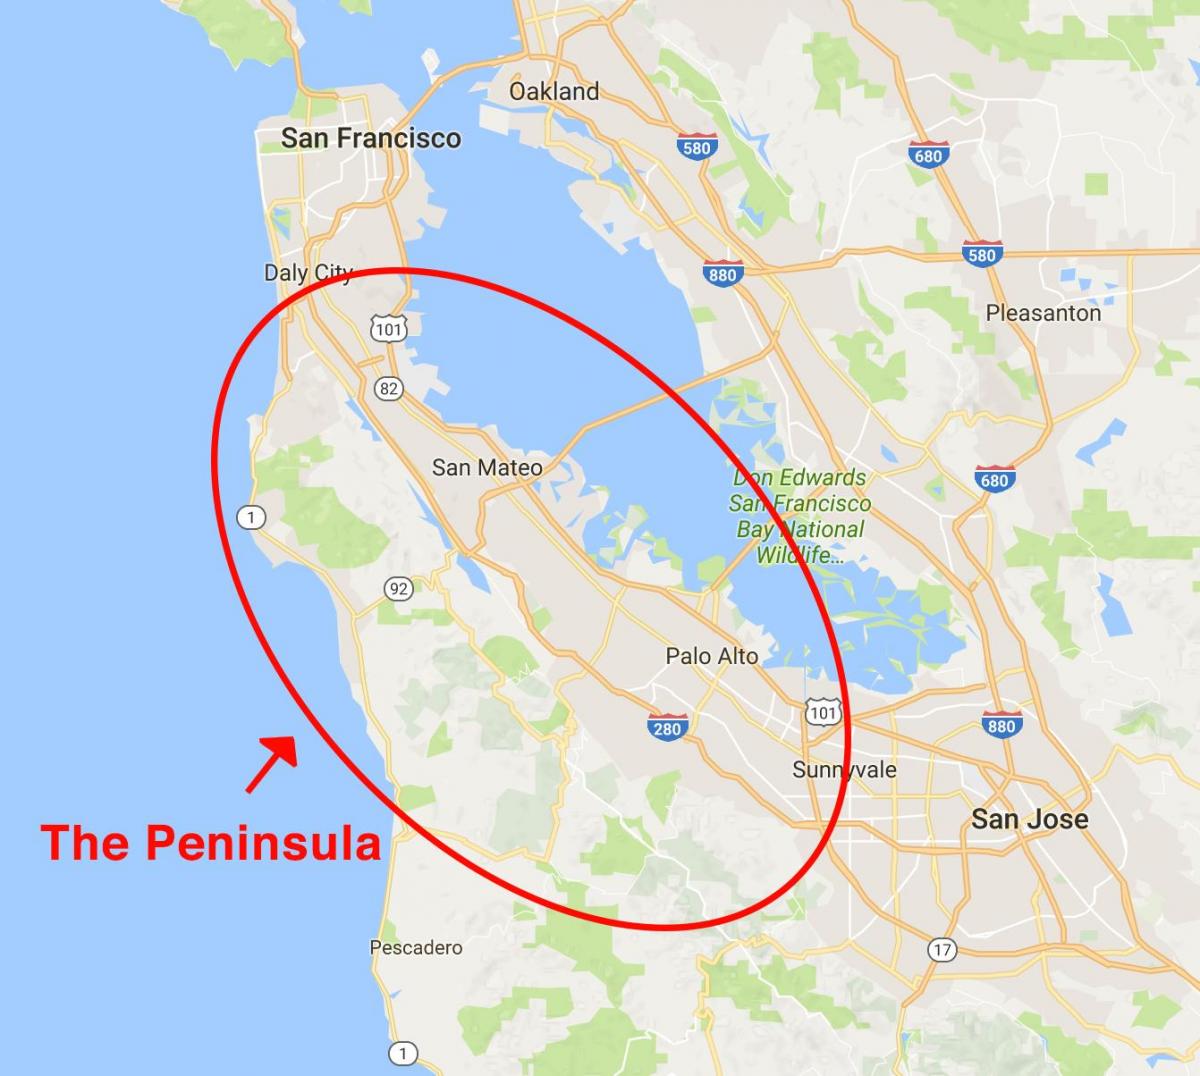 خريطة شبه جزيرة سان فرانسيسكو 